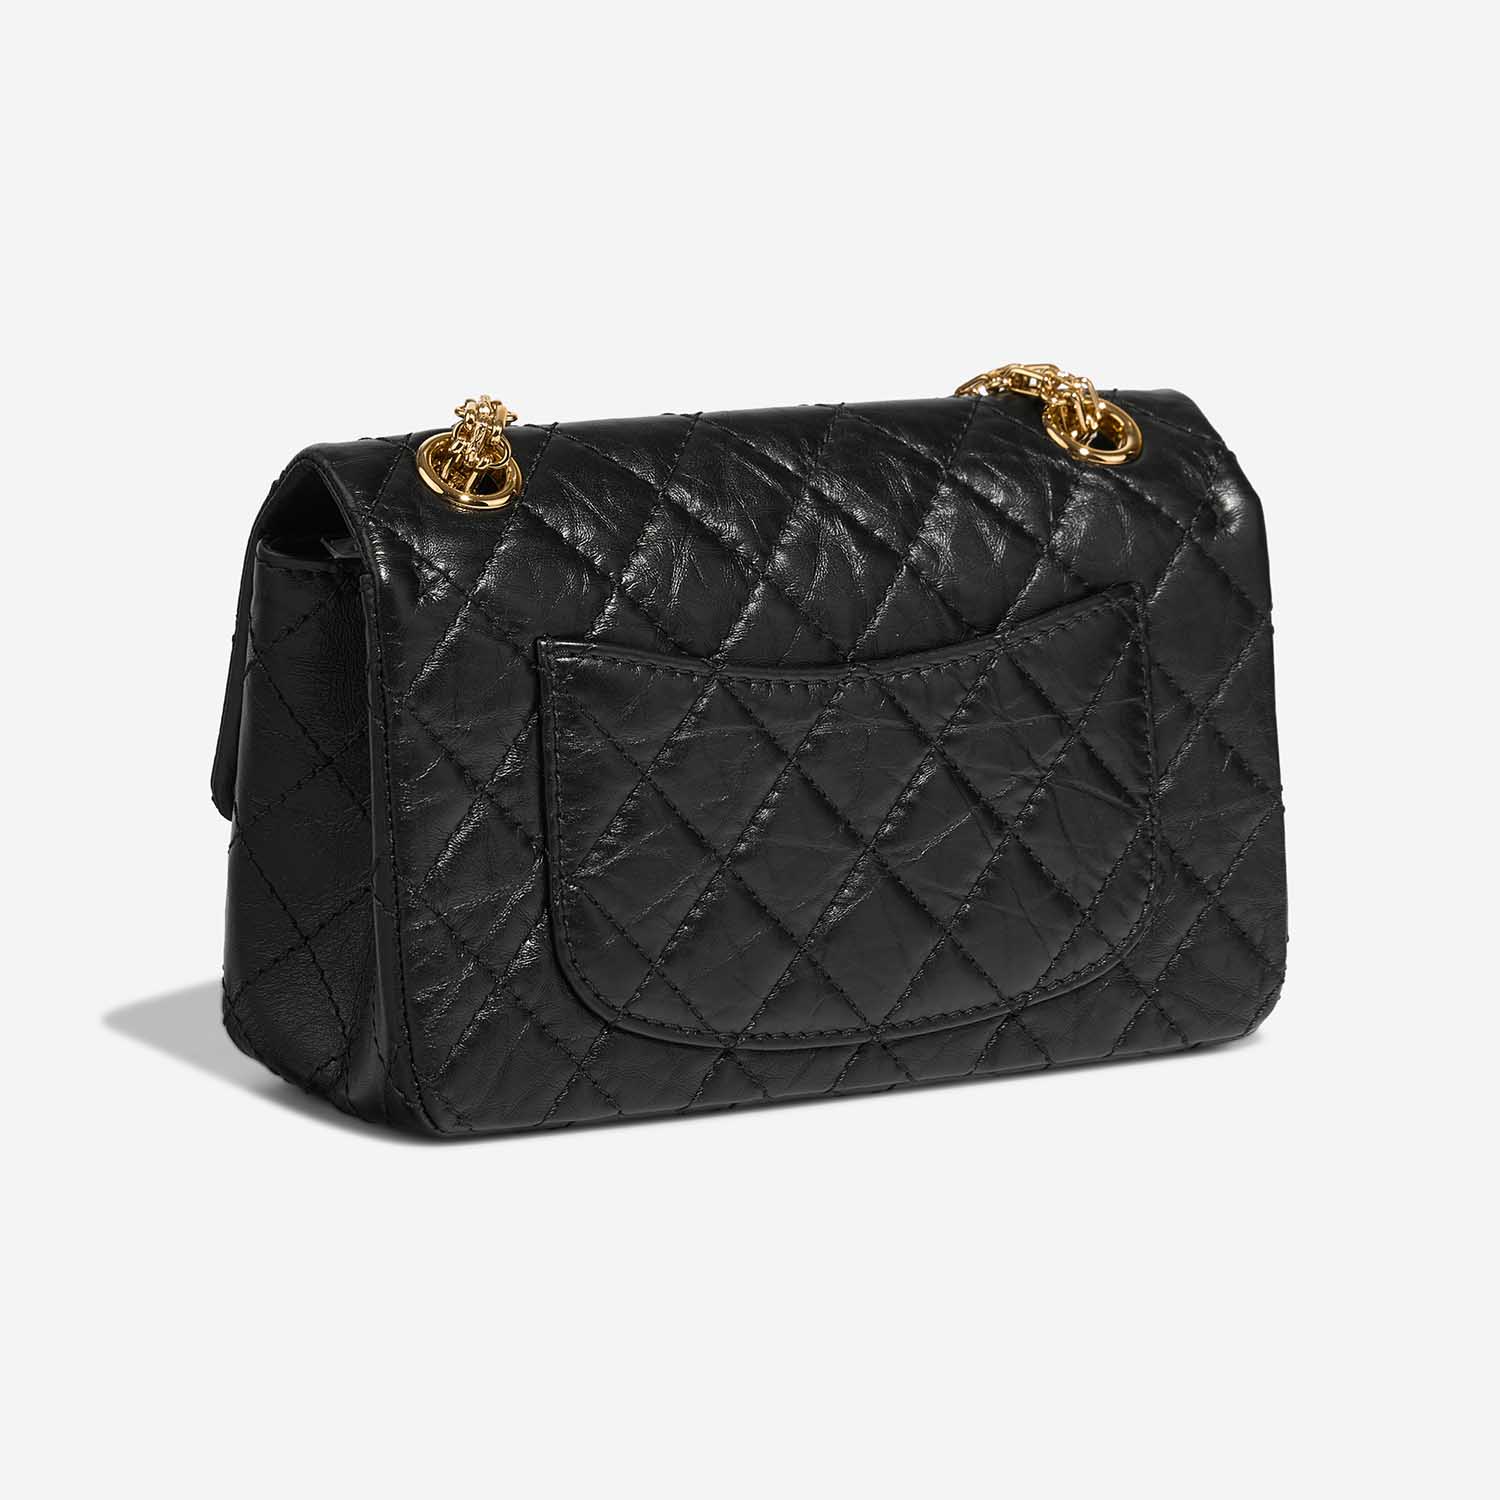 Chanel 255Reissue 224 Black Side Back | Verkaufen Sie Ihre Designer-Tasche auf Saclab.com